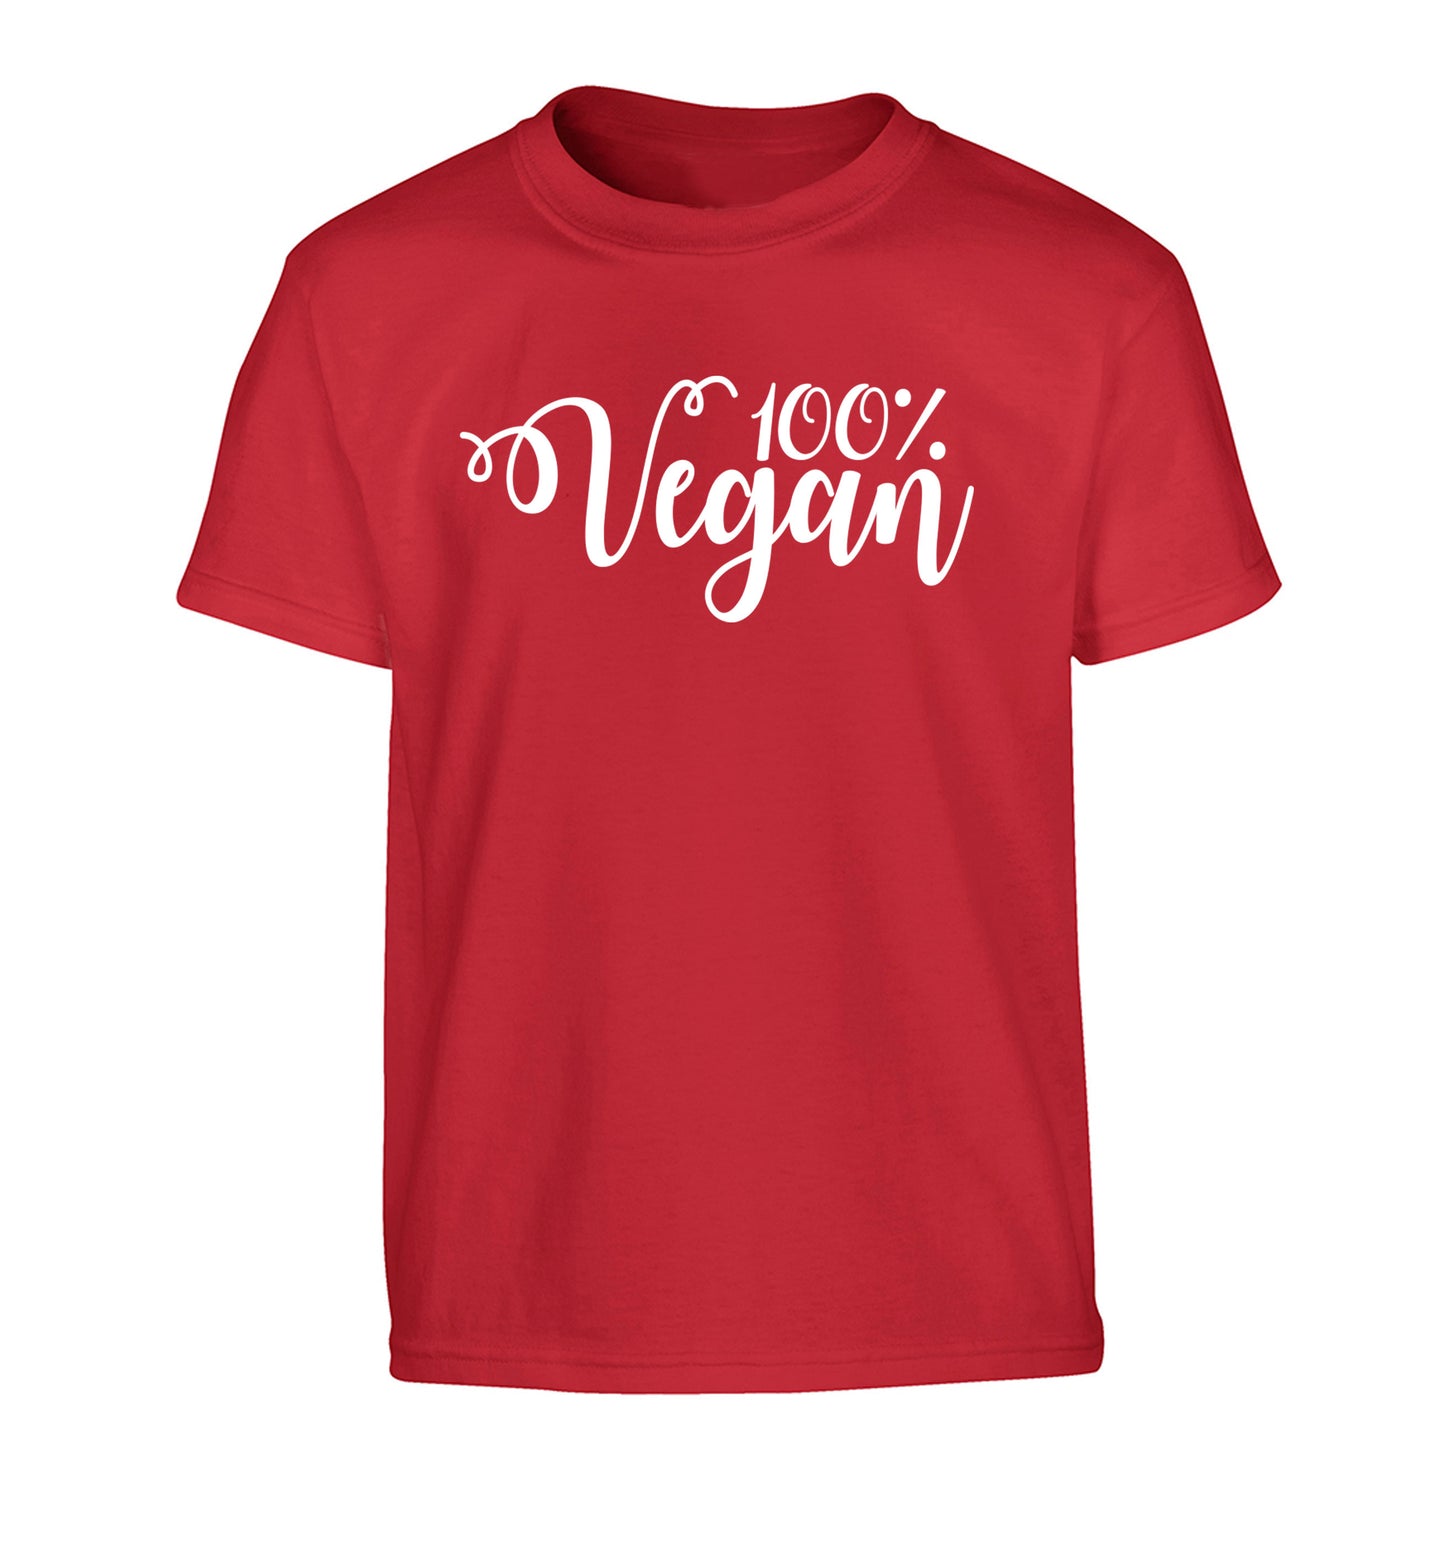 100% Vegan Children's red Tshirt 12-14 Years